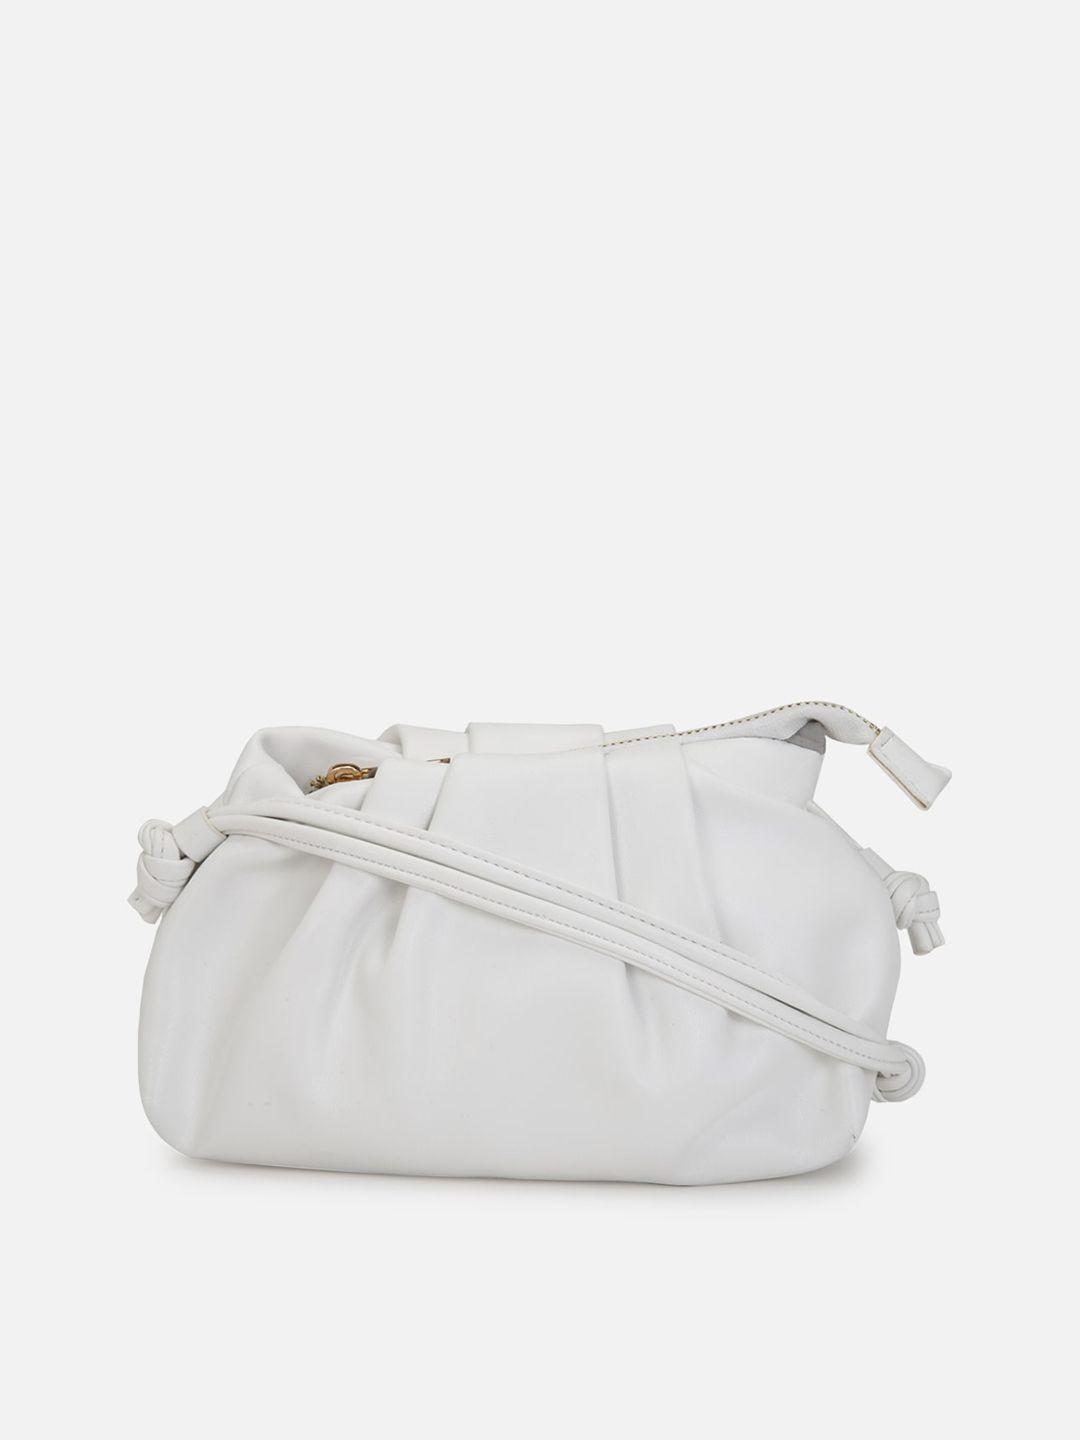 forever 21 white structured sling bag